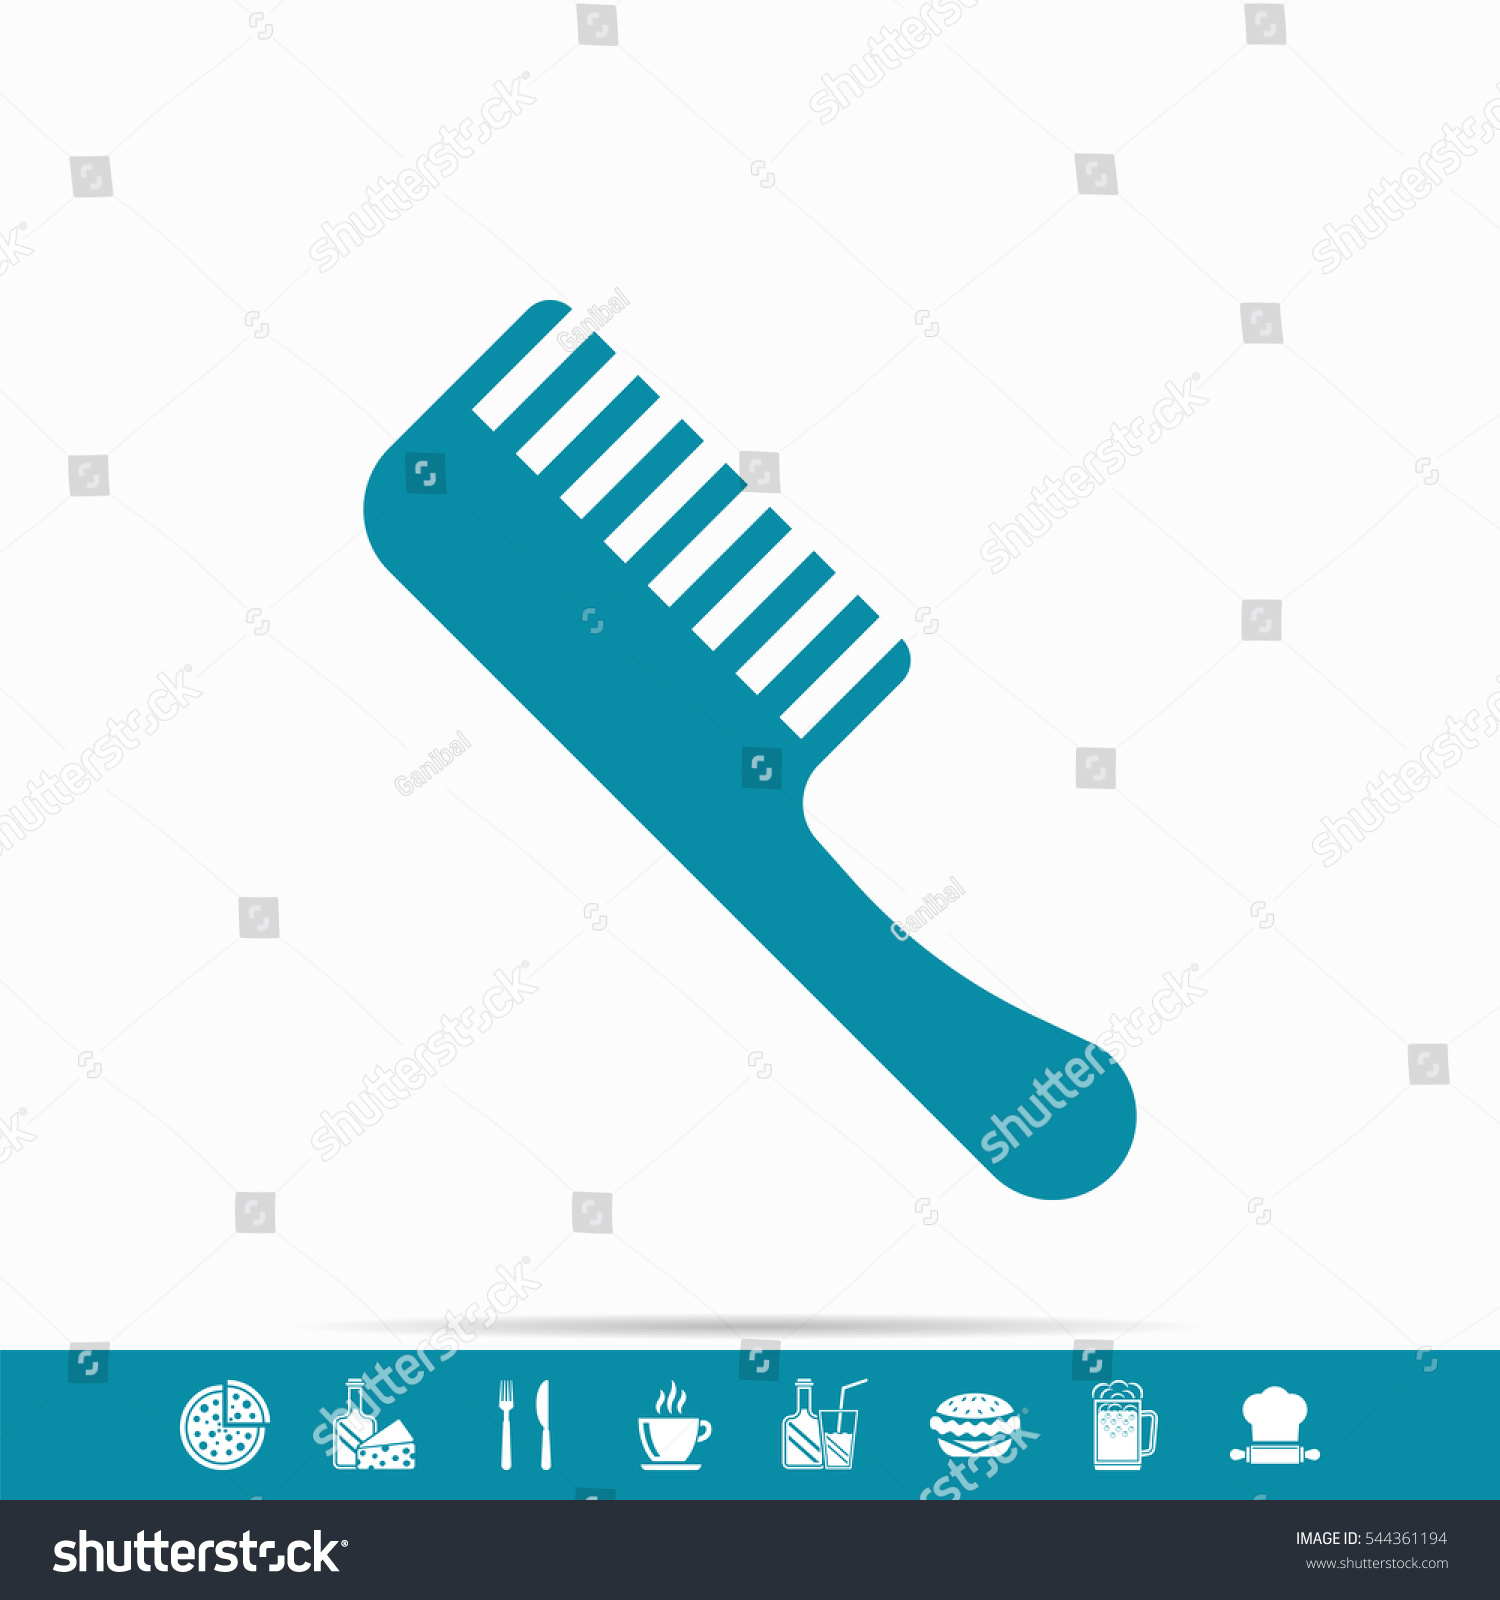 Edit Vectors Free Online - barber comb | Shutterstock Editor